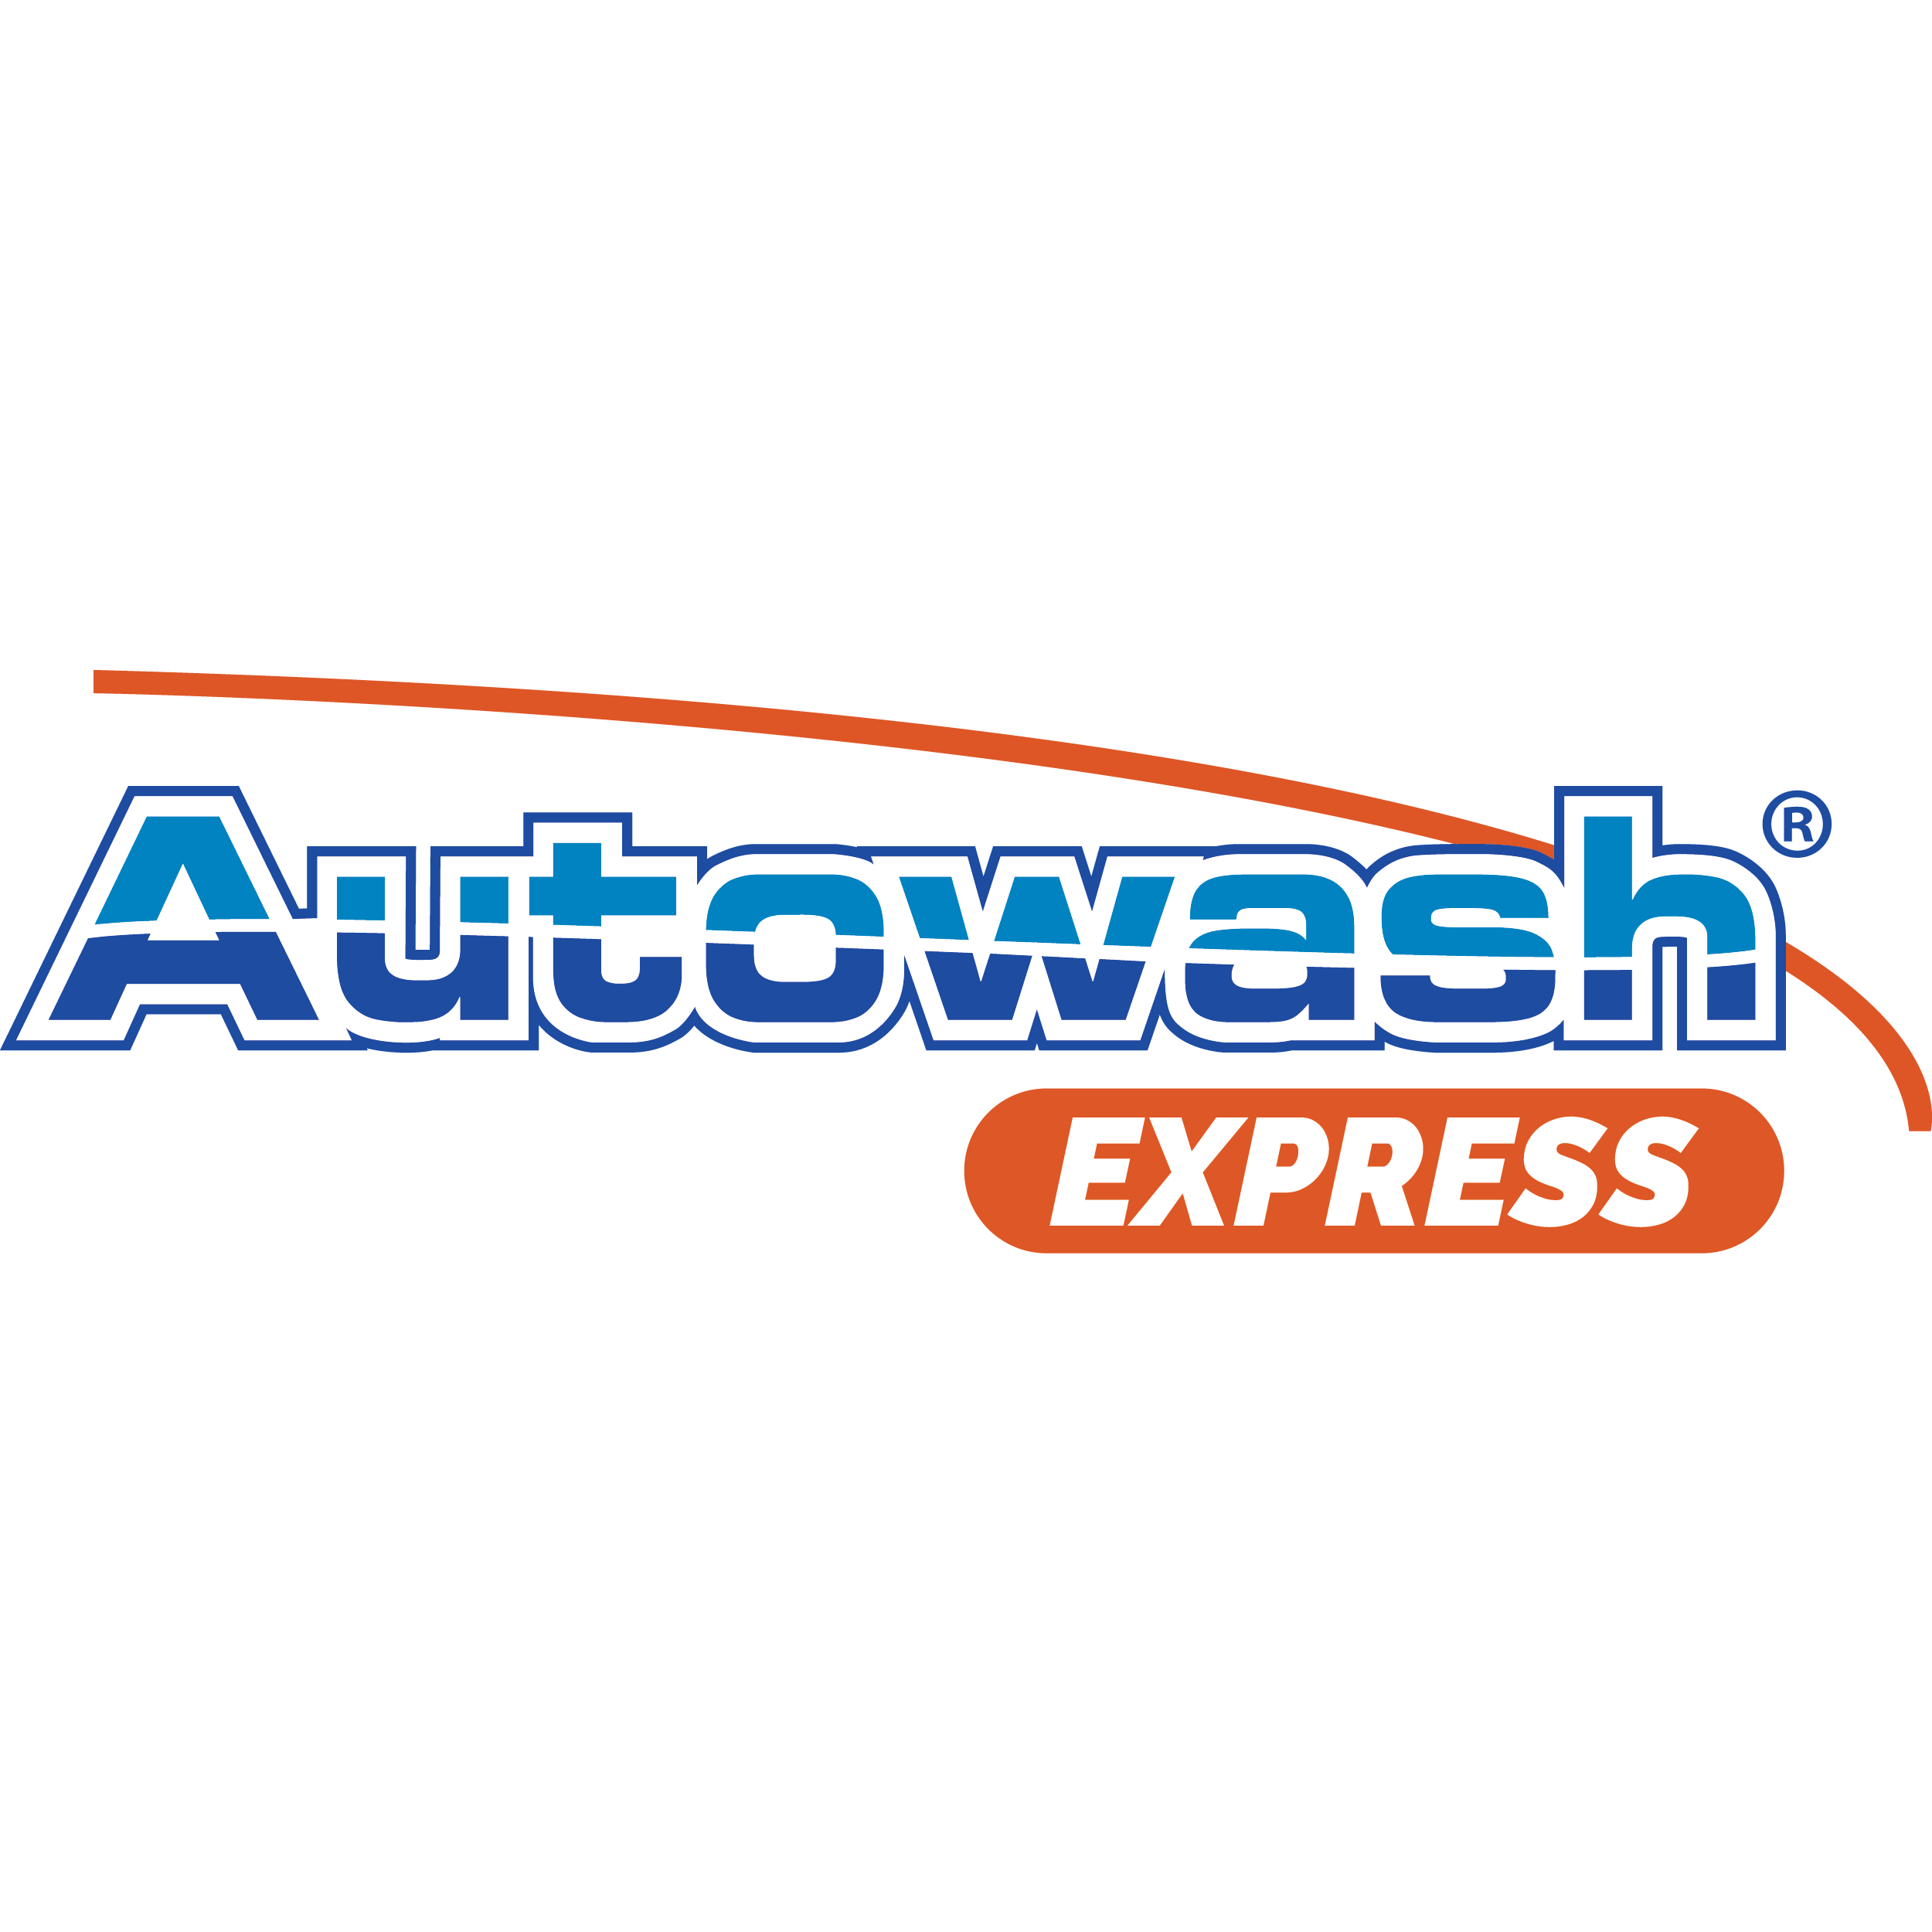 Autowash Express @ Cedar Place Car Wash - Lakewood, CO 80232 - (303)927-9061 | ShowMeLocal.com